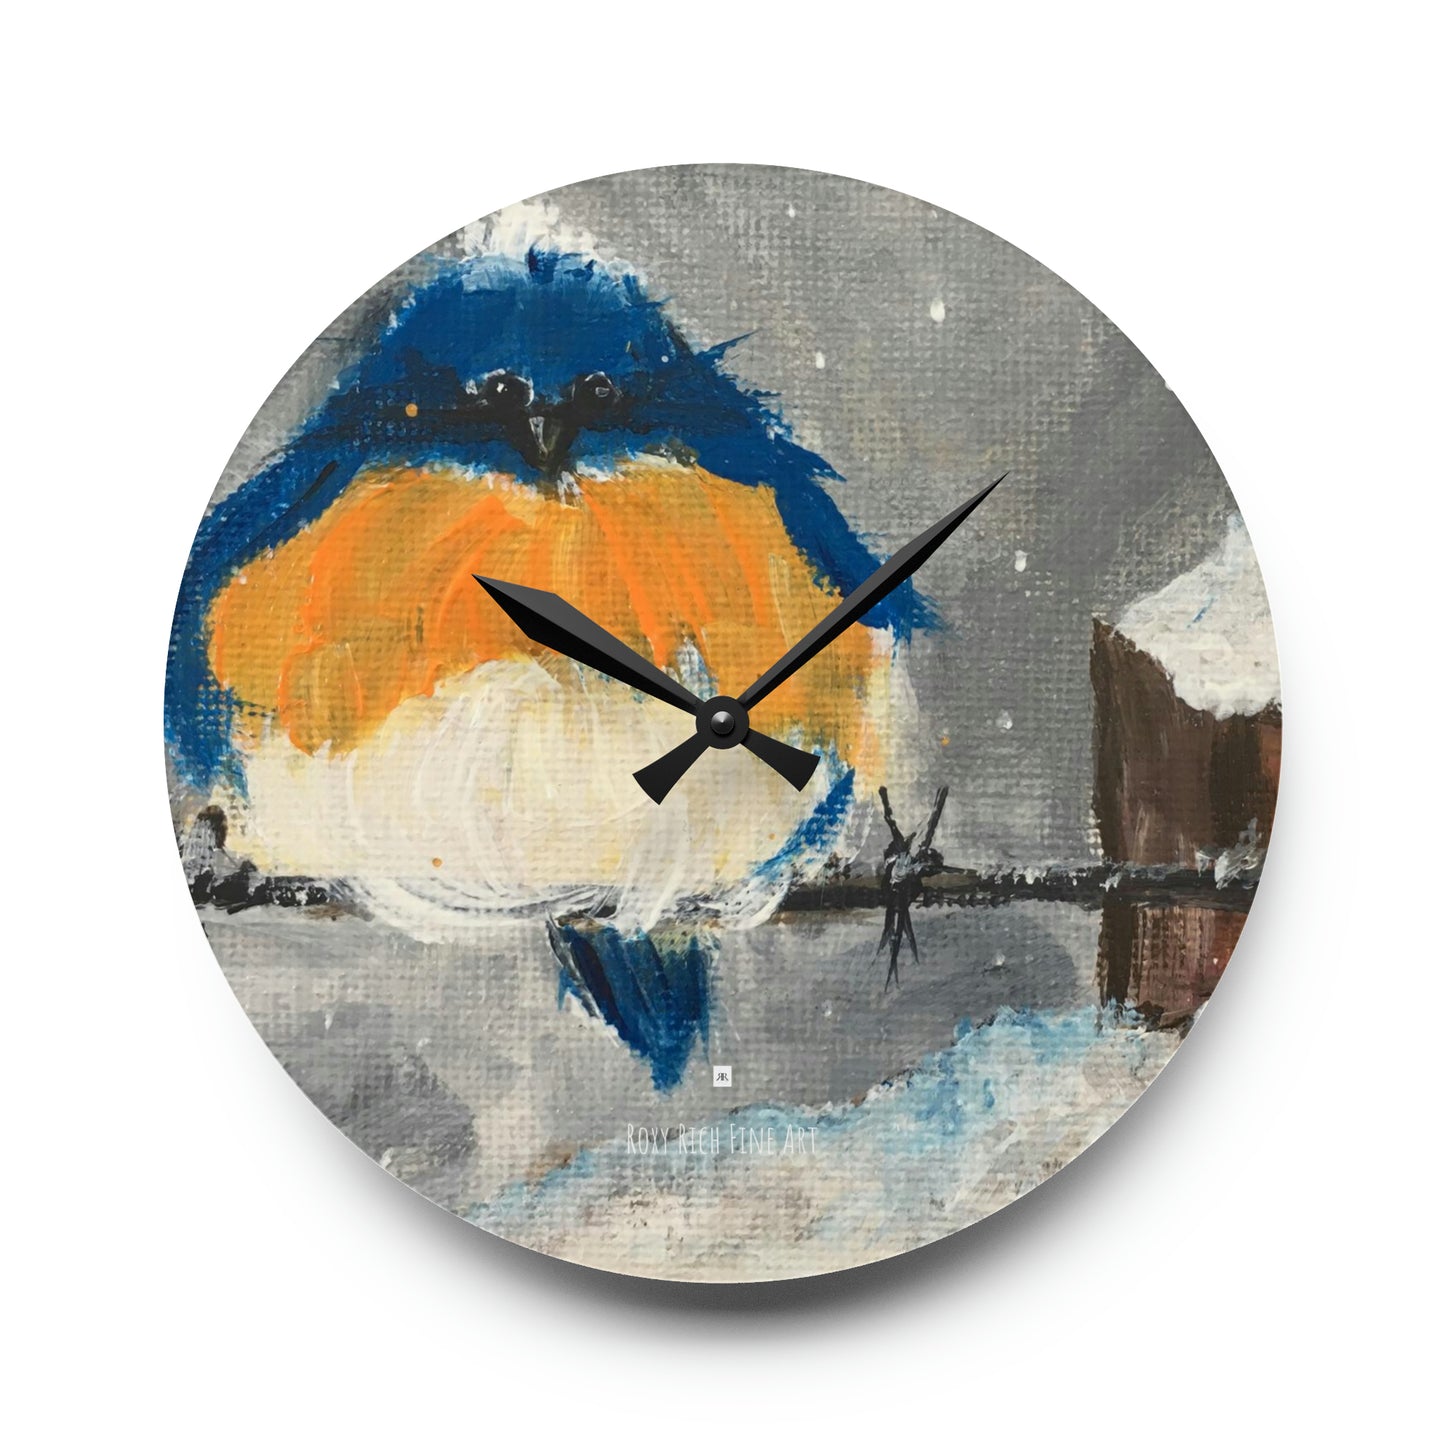 Reloj de pared acrílico con pájaro azul gordo y esponjoso en la nieve